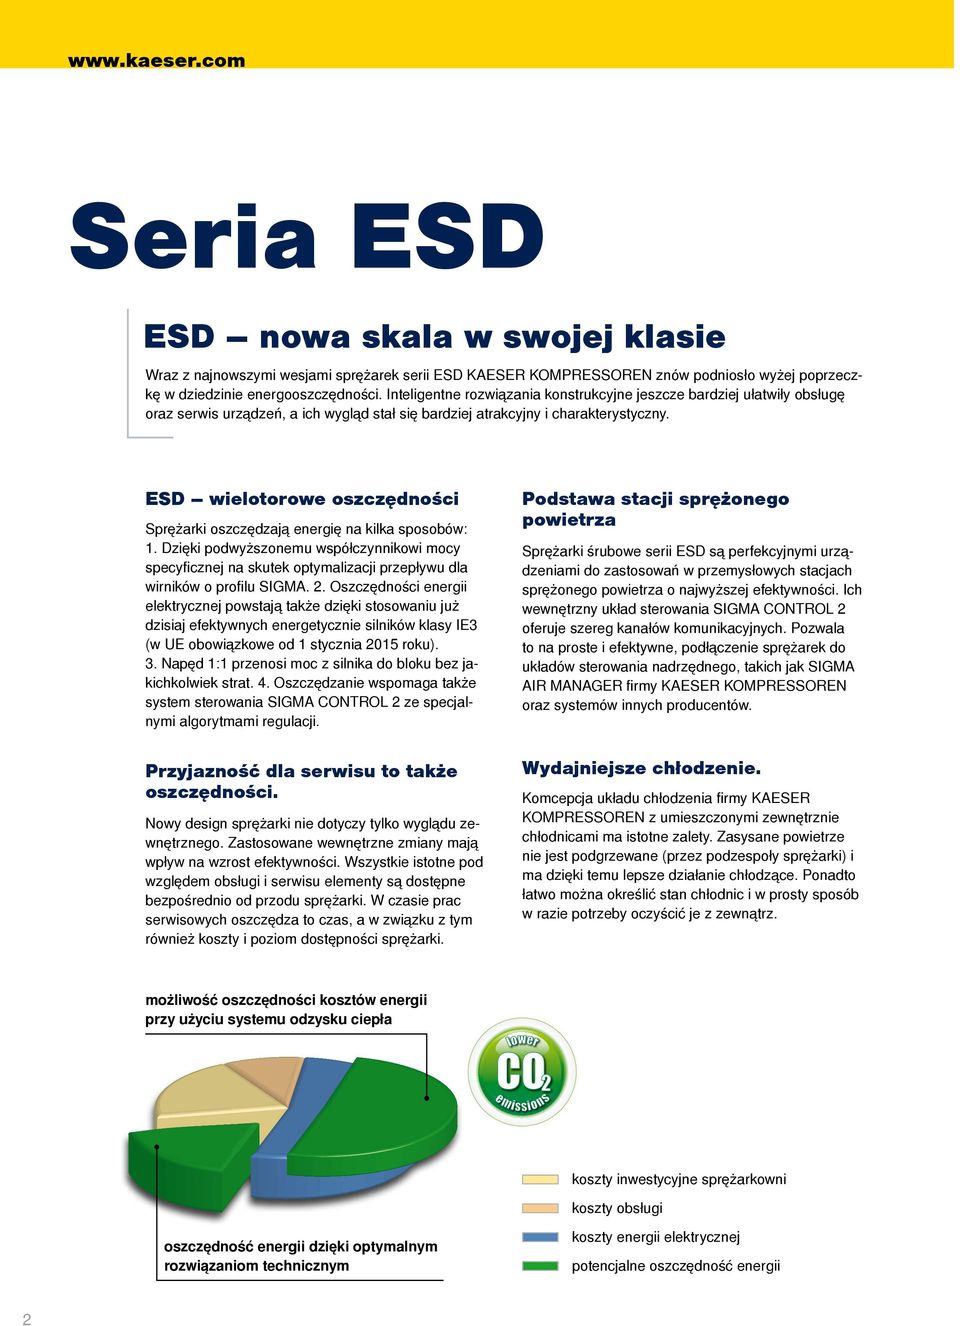 ESD wielotorowe oszczędności Sprężarki oszczędzają energię na kilka sposobów:. Dzięki podwyższonemu współczynnikowi mocy specyficznej na skutek optymalizacji przepływu dla wirników o profilu SIGMA.